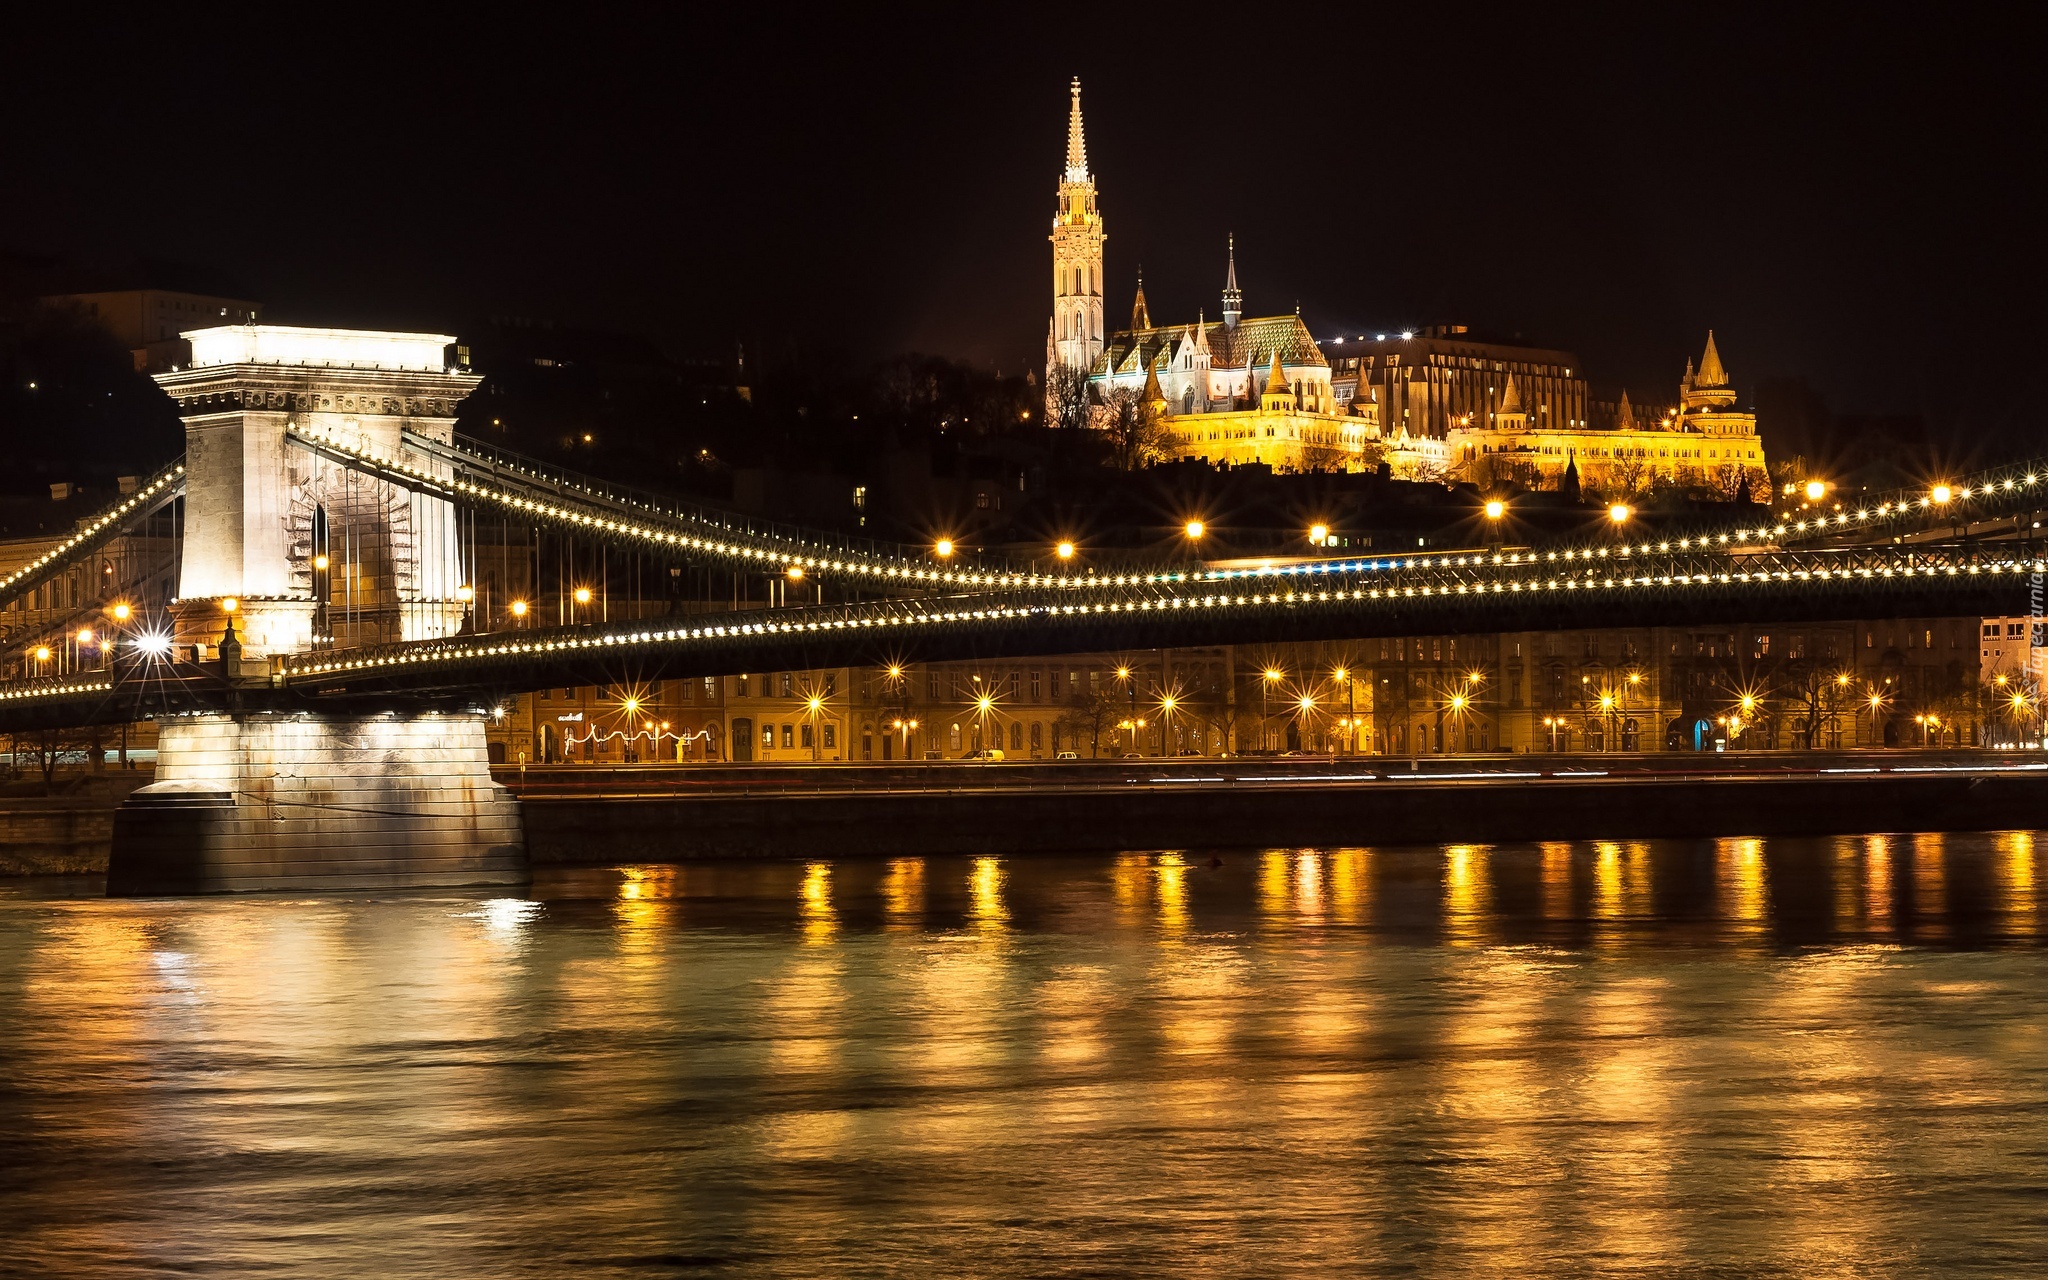 Miasto, Noc, Światła, Most, Rzeka, Budapeszt